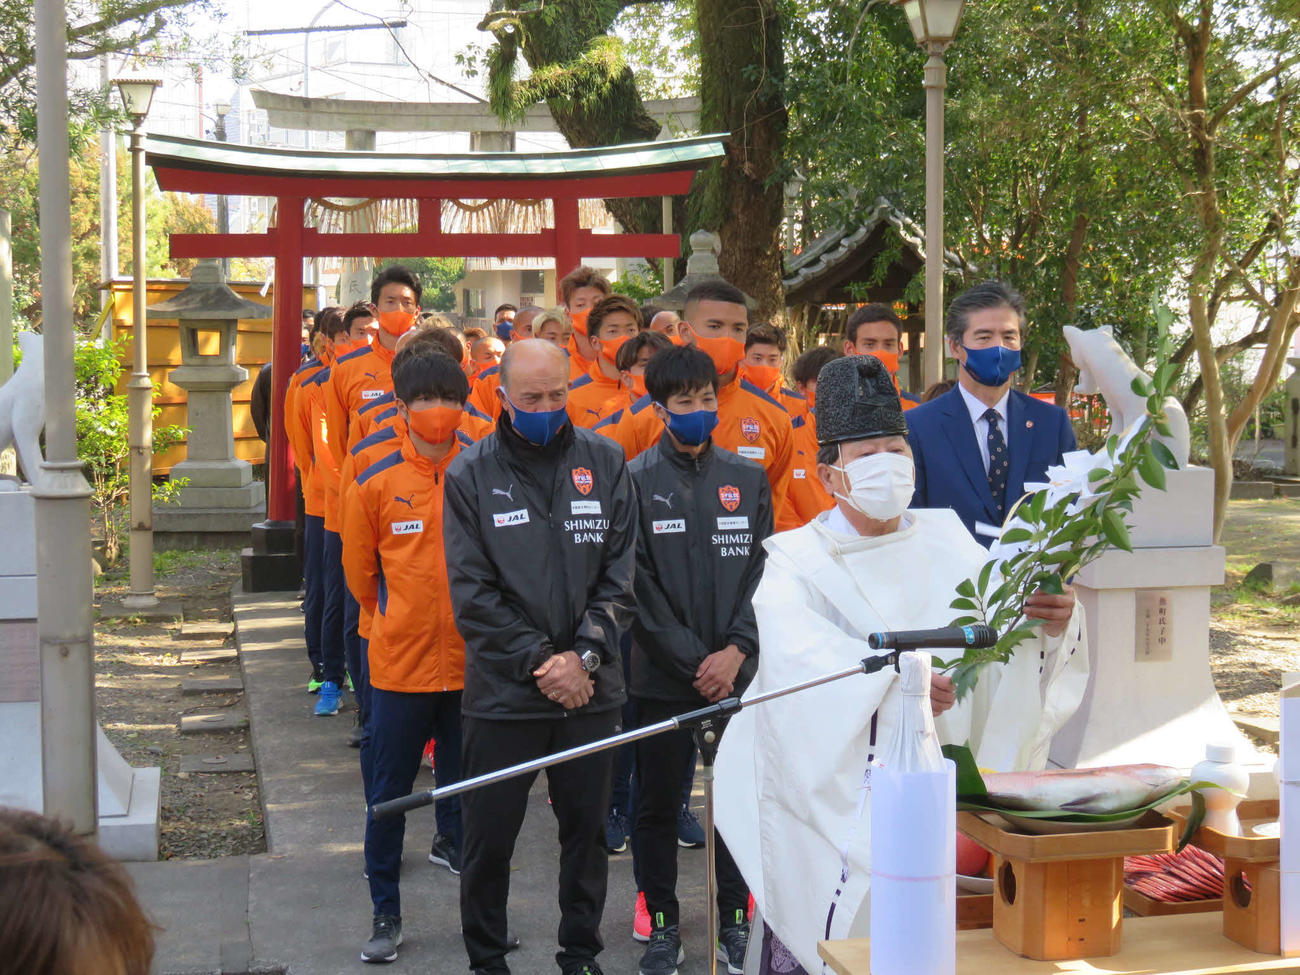 必勝祈願で静岡市内の神社を訪れた清水エスパルスのスタッフと選手は、神事に参加する